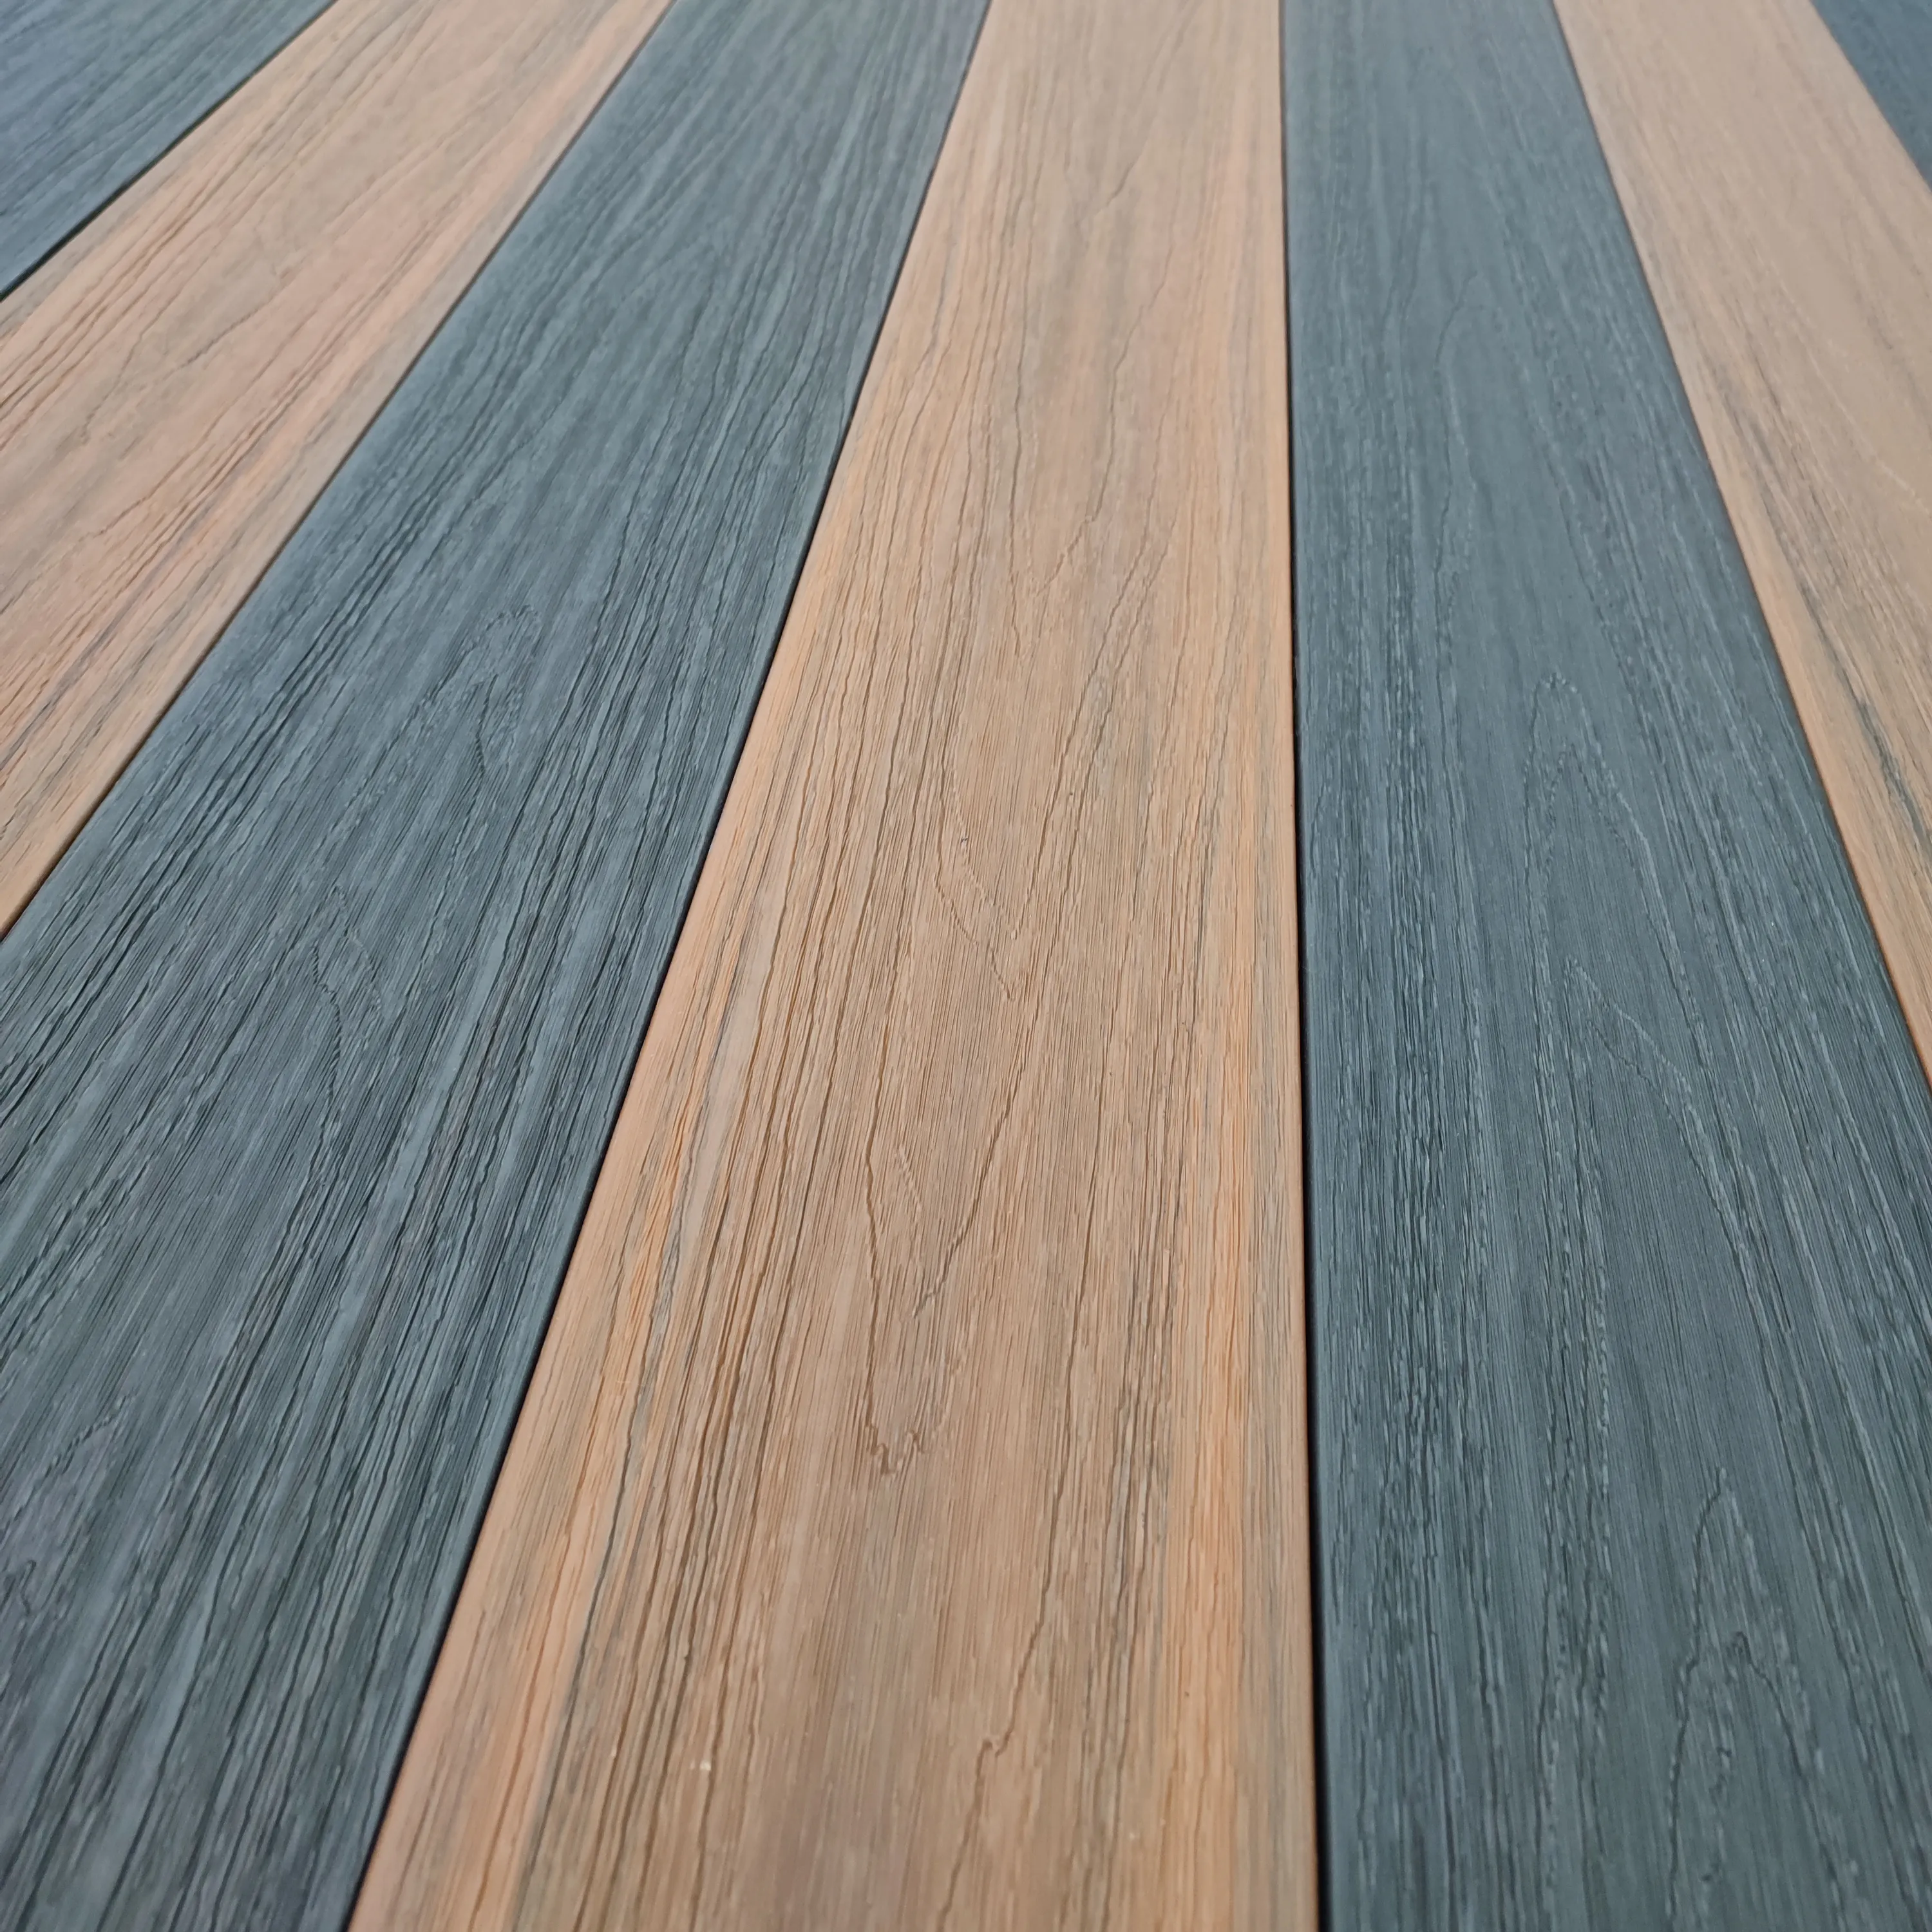 Co ép đùn sàn ngoài trời Composite decking bảng nhựa sàn gỗ đôi màu sắc WPC decking